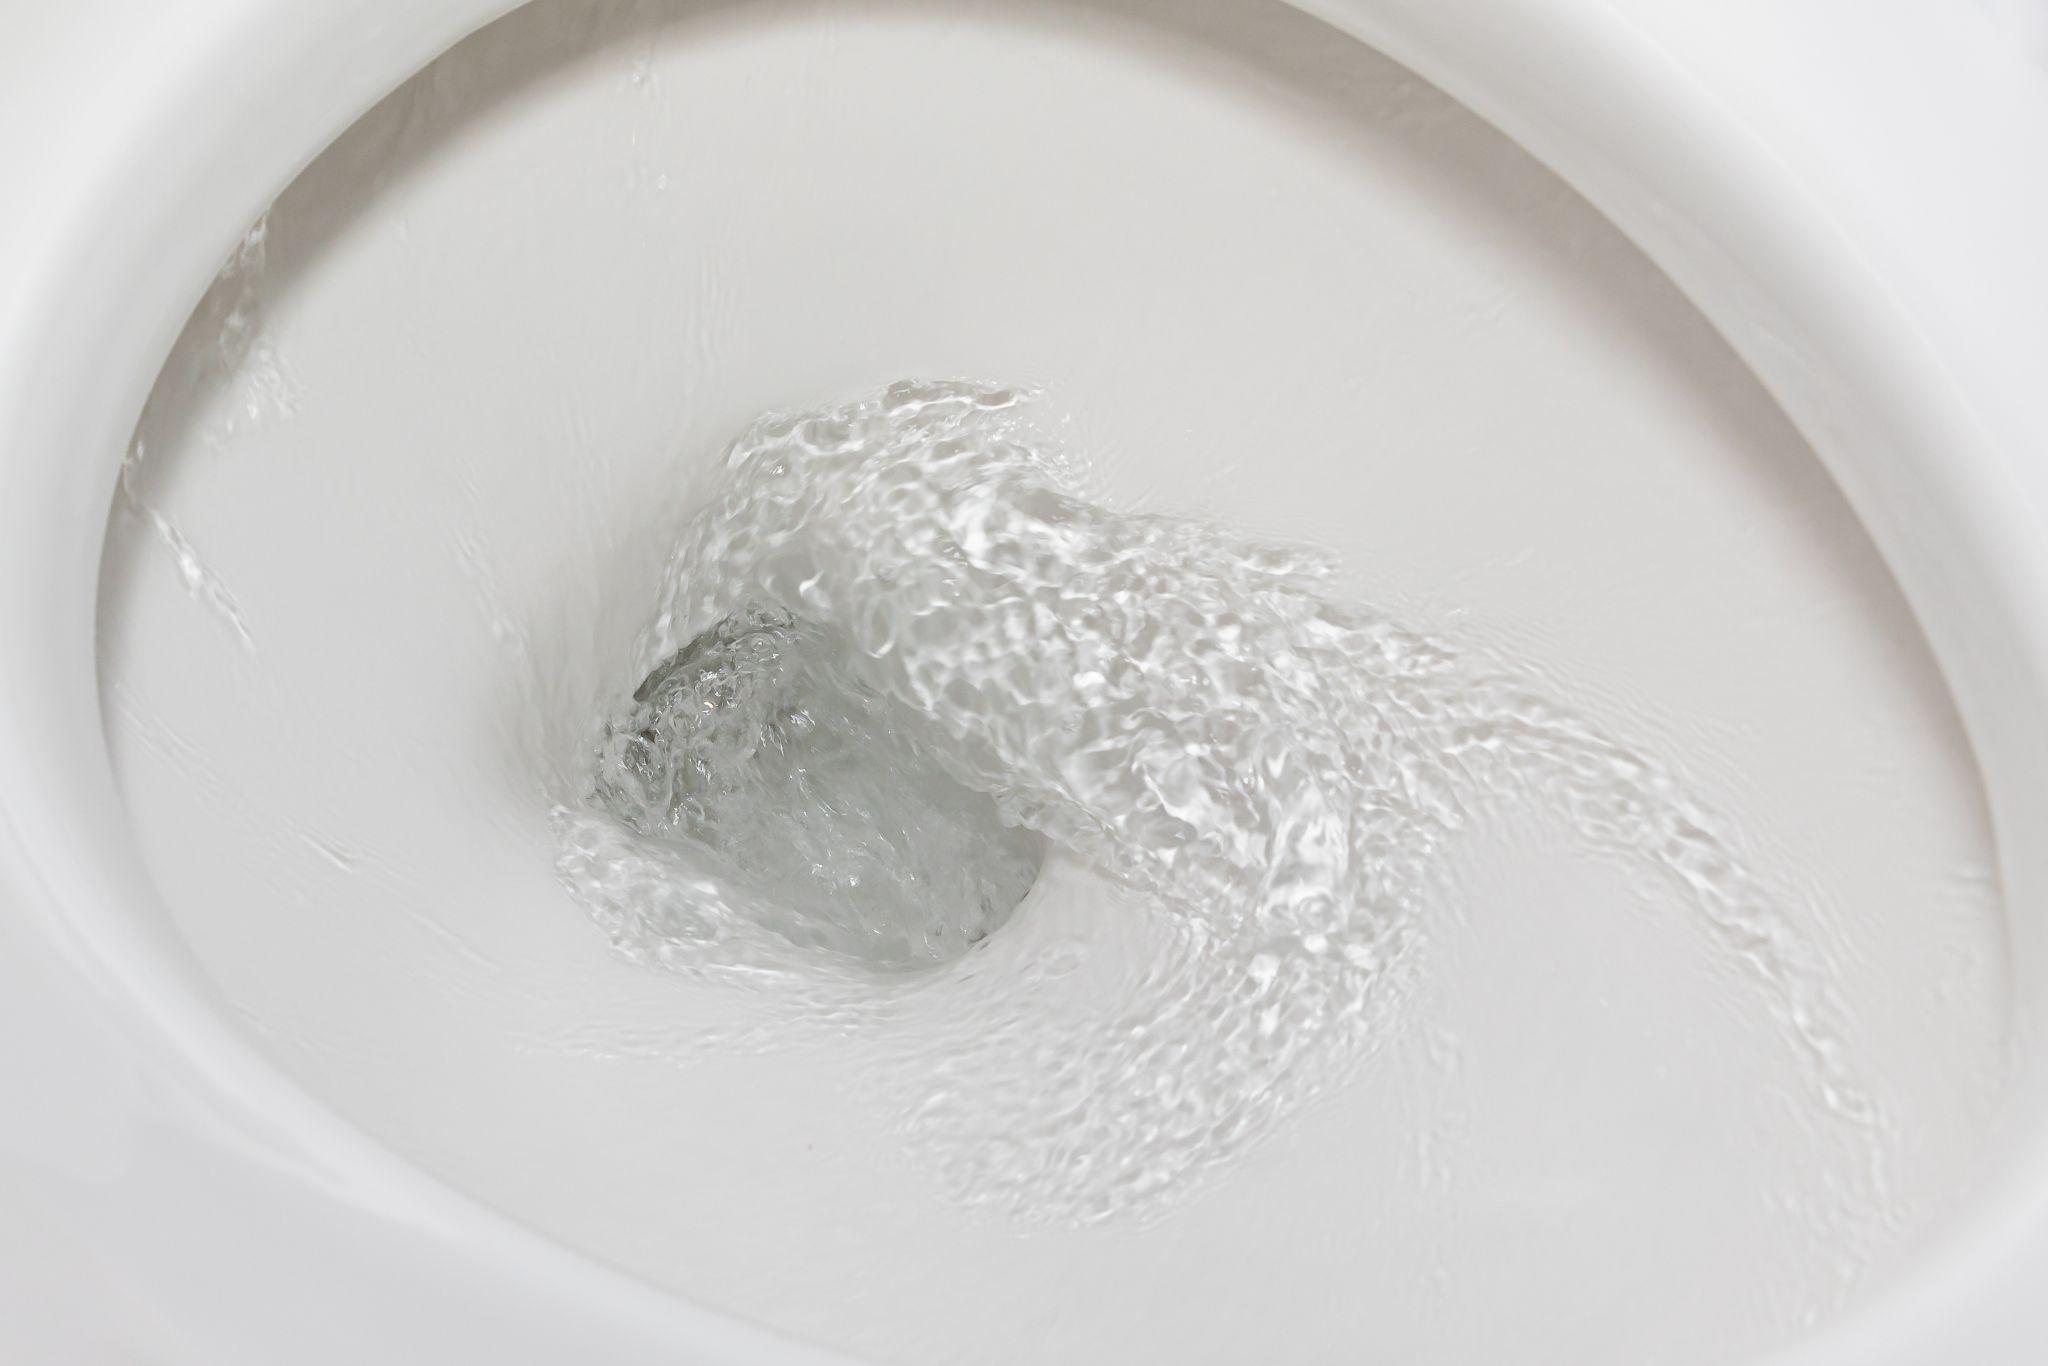 Toilet water flushing